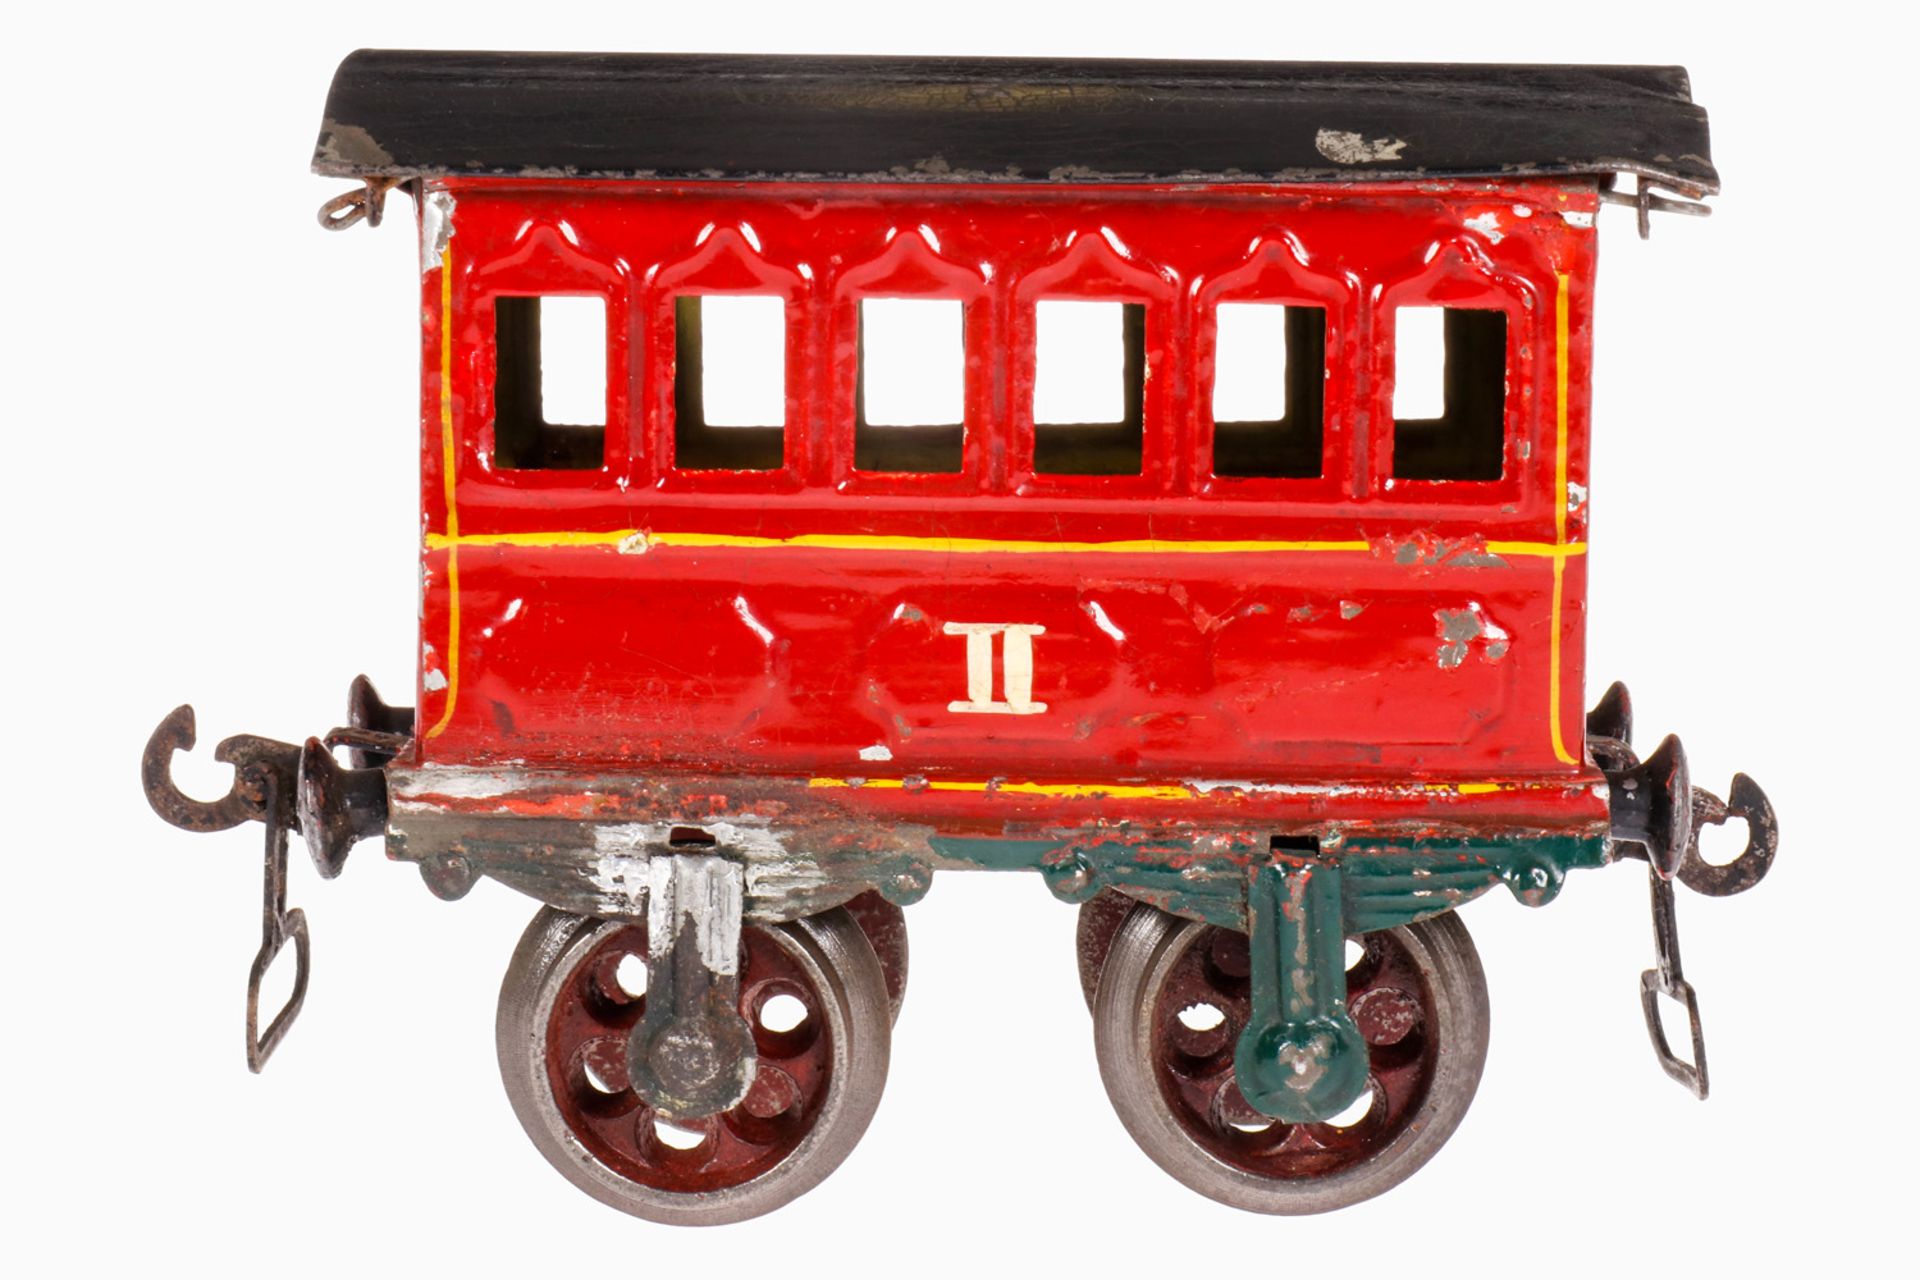 Märklin Personenwagen 1805, S 1, rot handlackiert, 2A Gussräder, breite Bügelkupplungen, Dach kleine